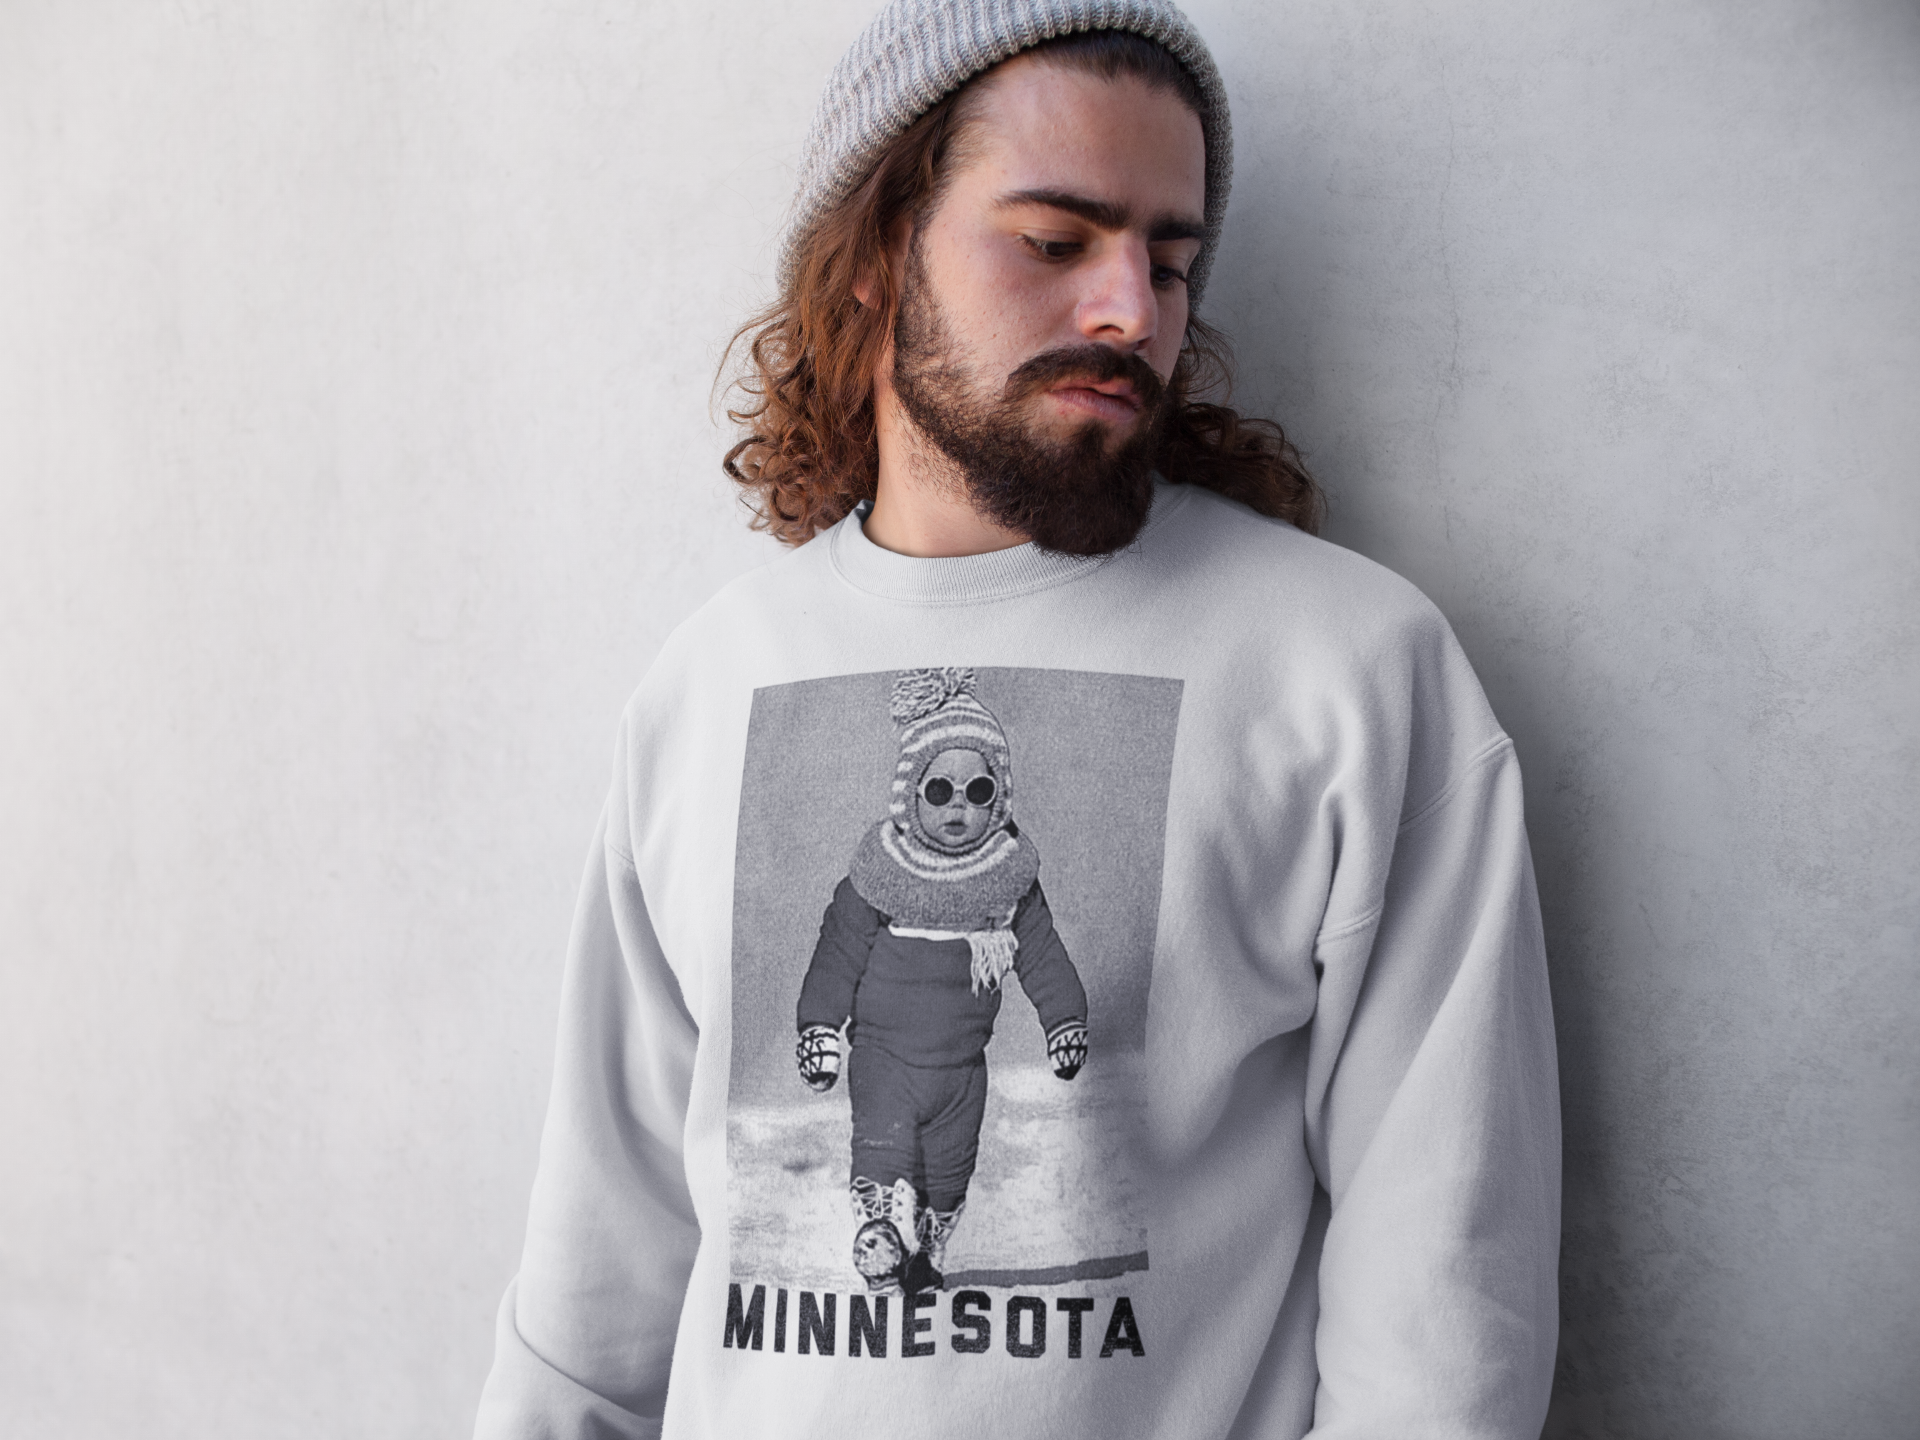 MN "Like A Boss" Sweatshirt